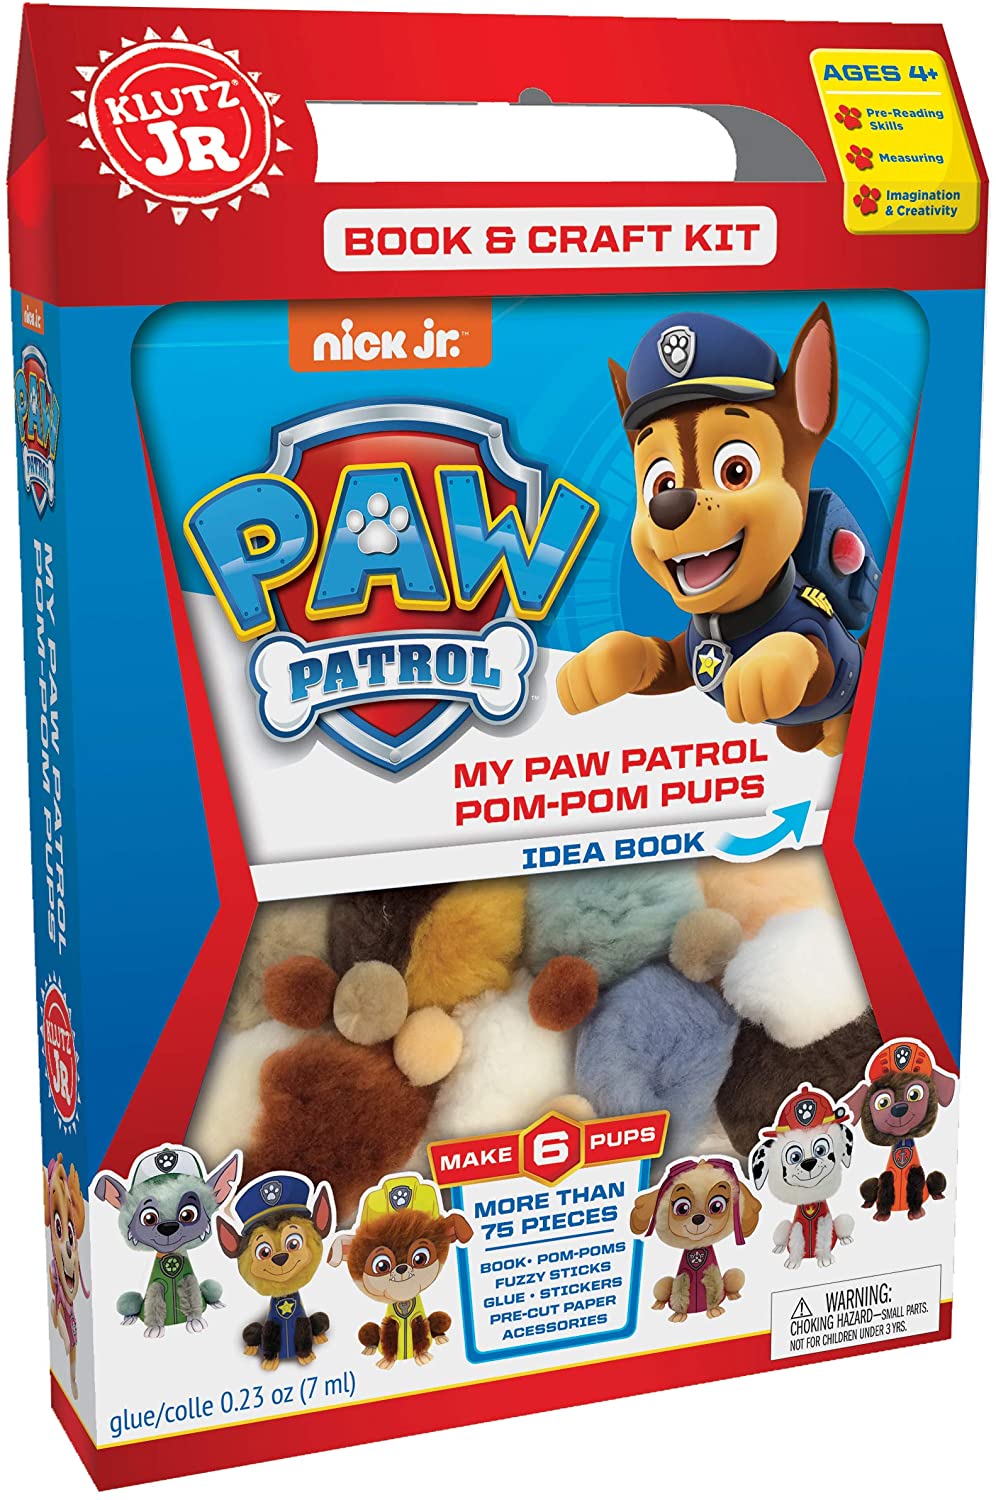 Klutz My Paw Patrol Pom-Pom Pups Jr. Craft Kit - ANB Baby -4+ years